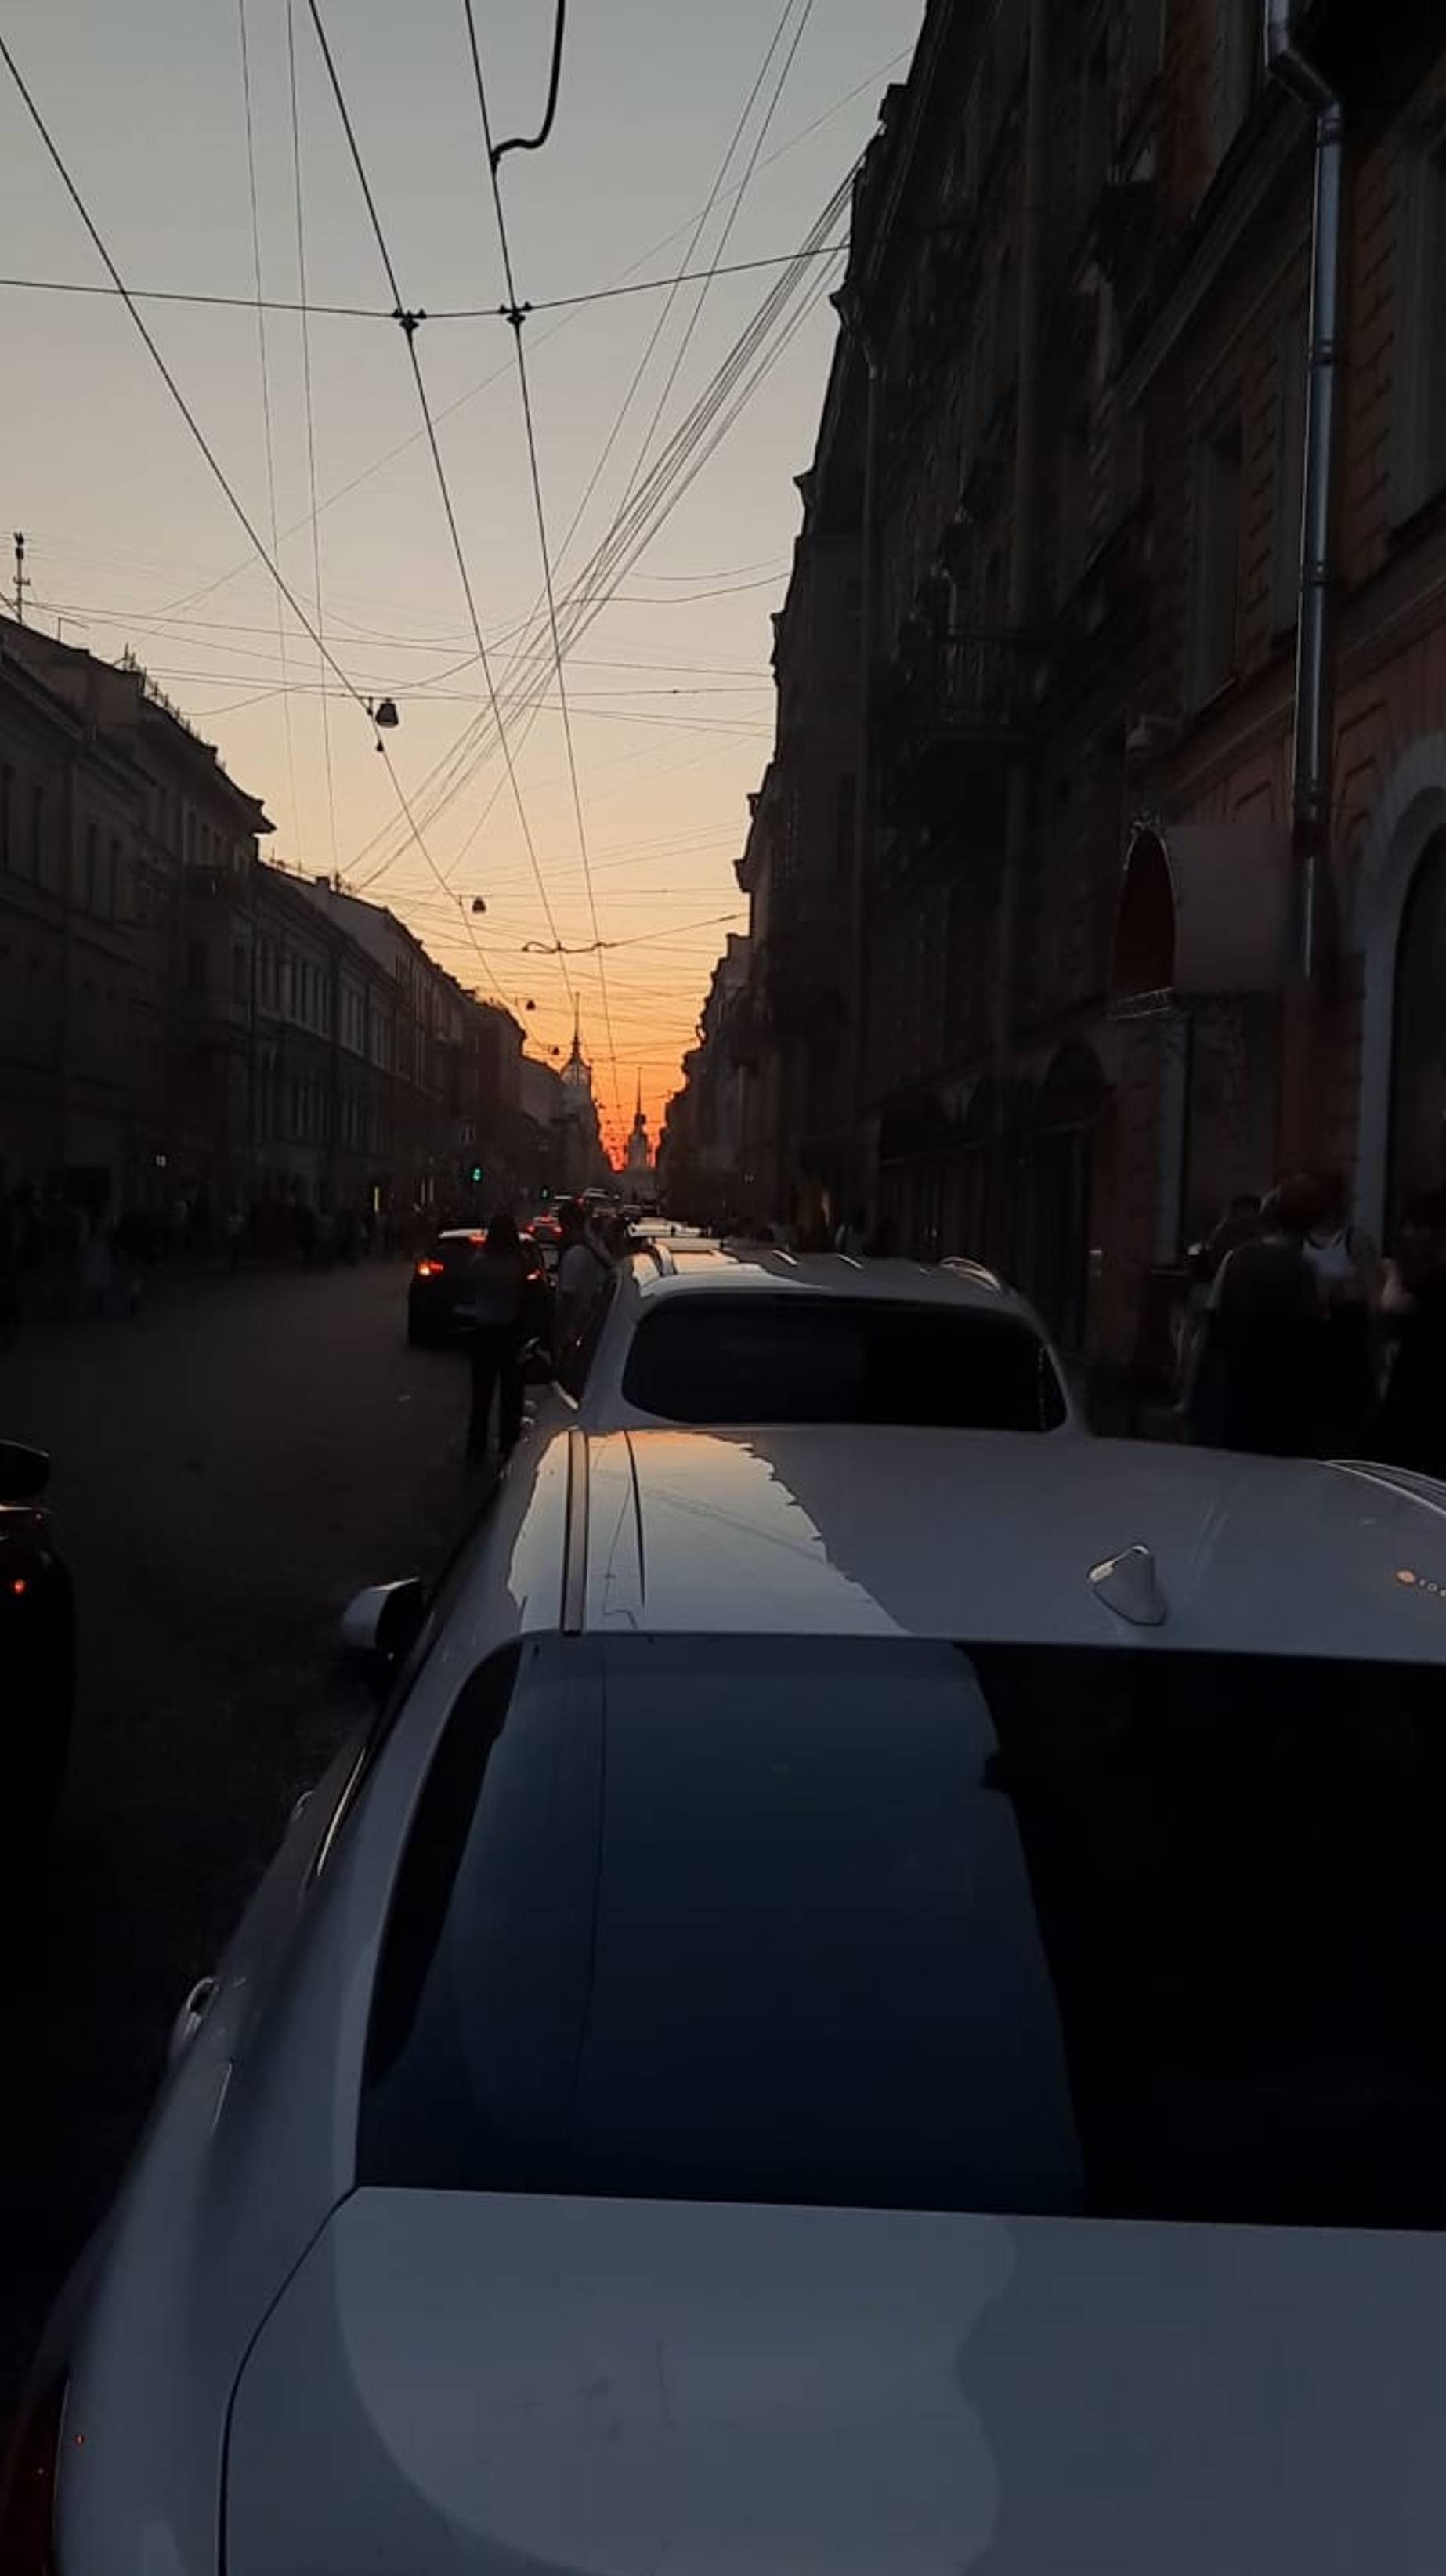 ТАКОЕ ВОЗМОЖНО ТОЛЬКО В ПИТЕРЕ) Закат на горизонте улицы Гороховая в городе Санкт-Петербурге вечером